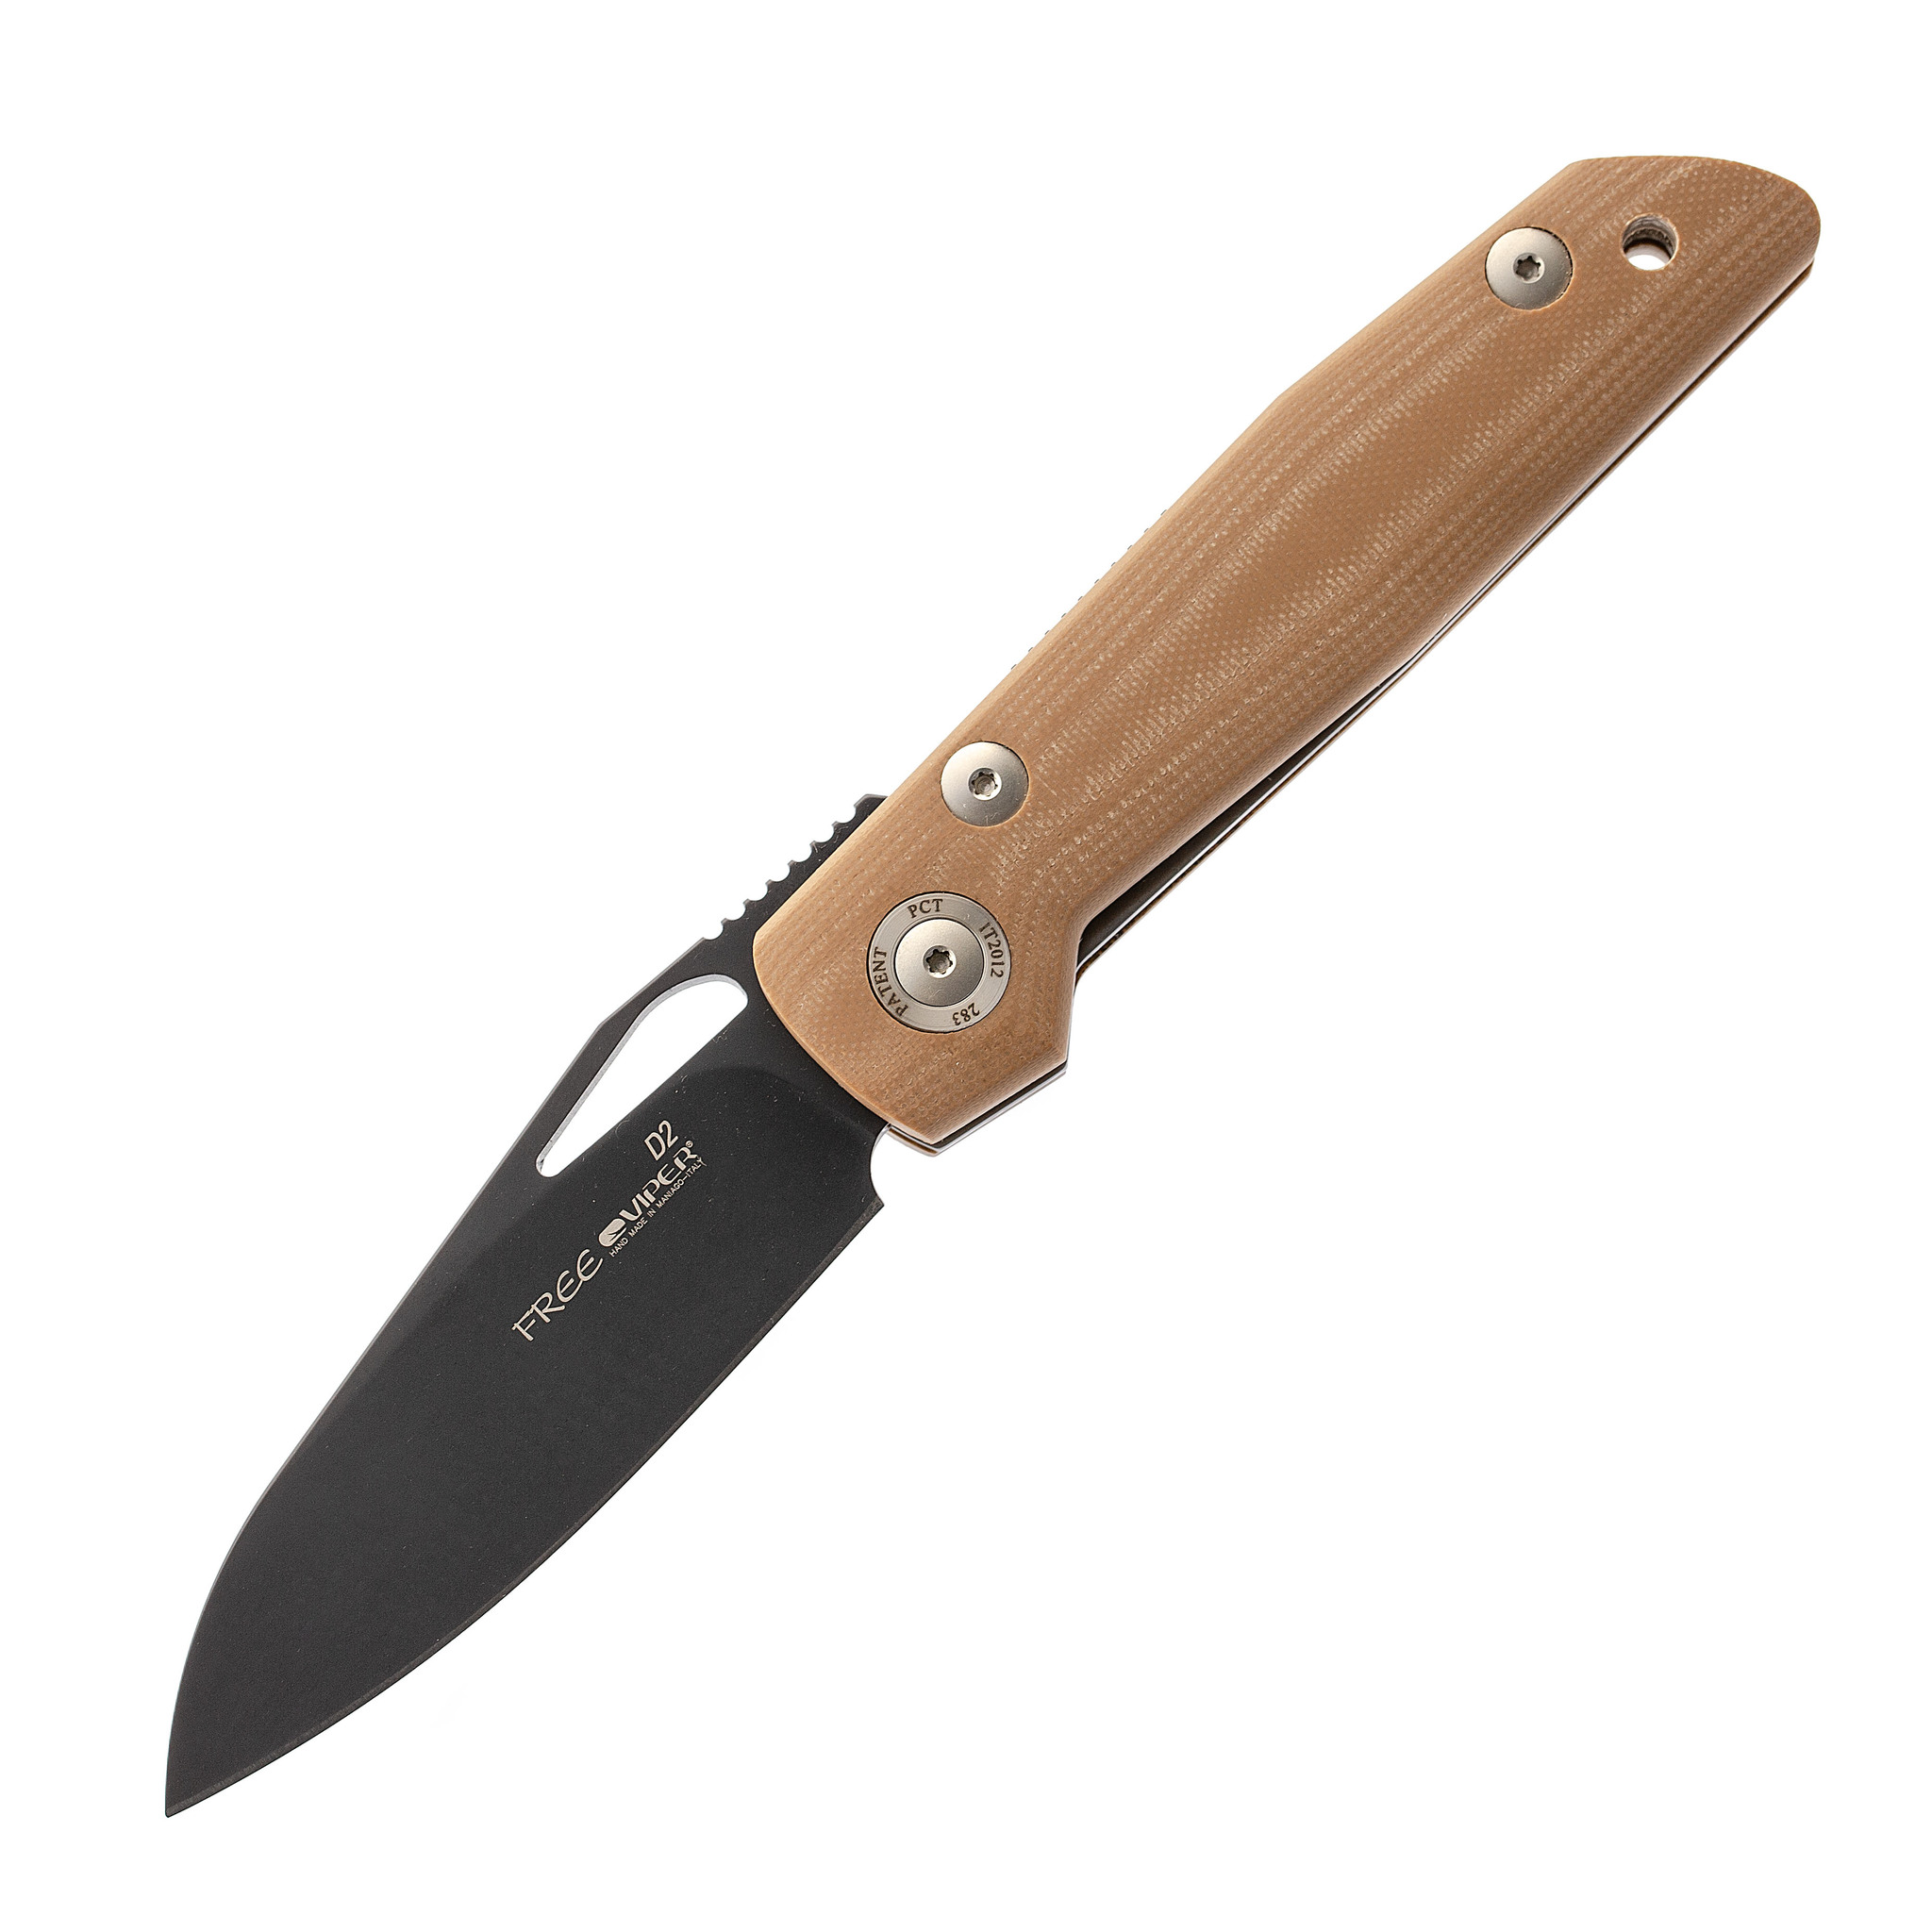 Складной нож Viper Free, сталь D2, Brown G10